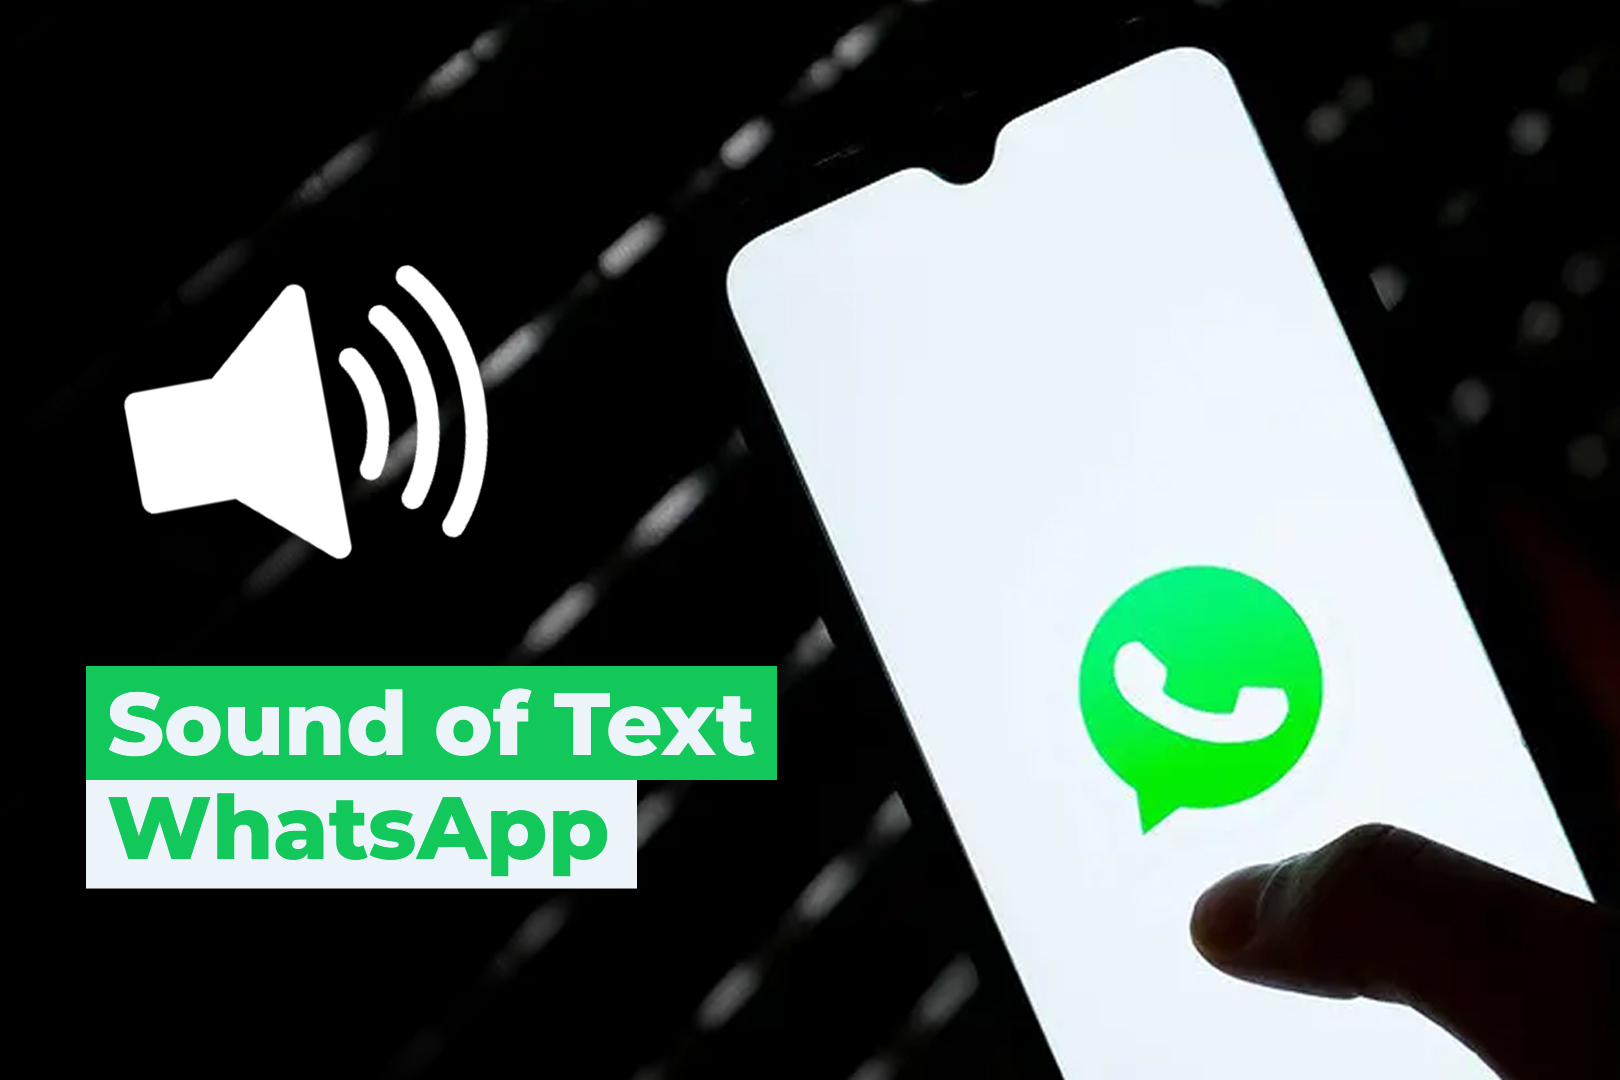  Monggo di Simak Lur, Cara Buat Sound of Text WhatsApp (WA) Berbahasa Jawa di Android Mudah dan Cepat